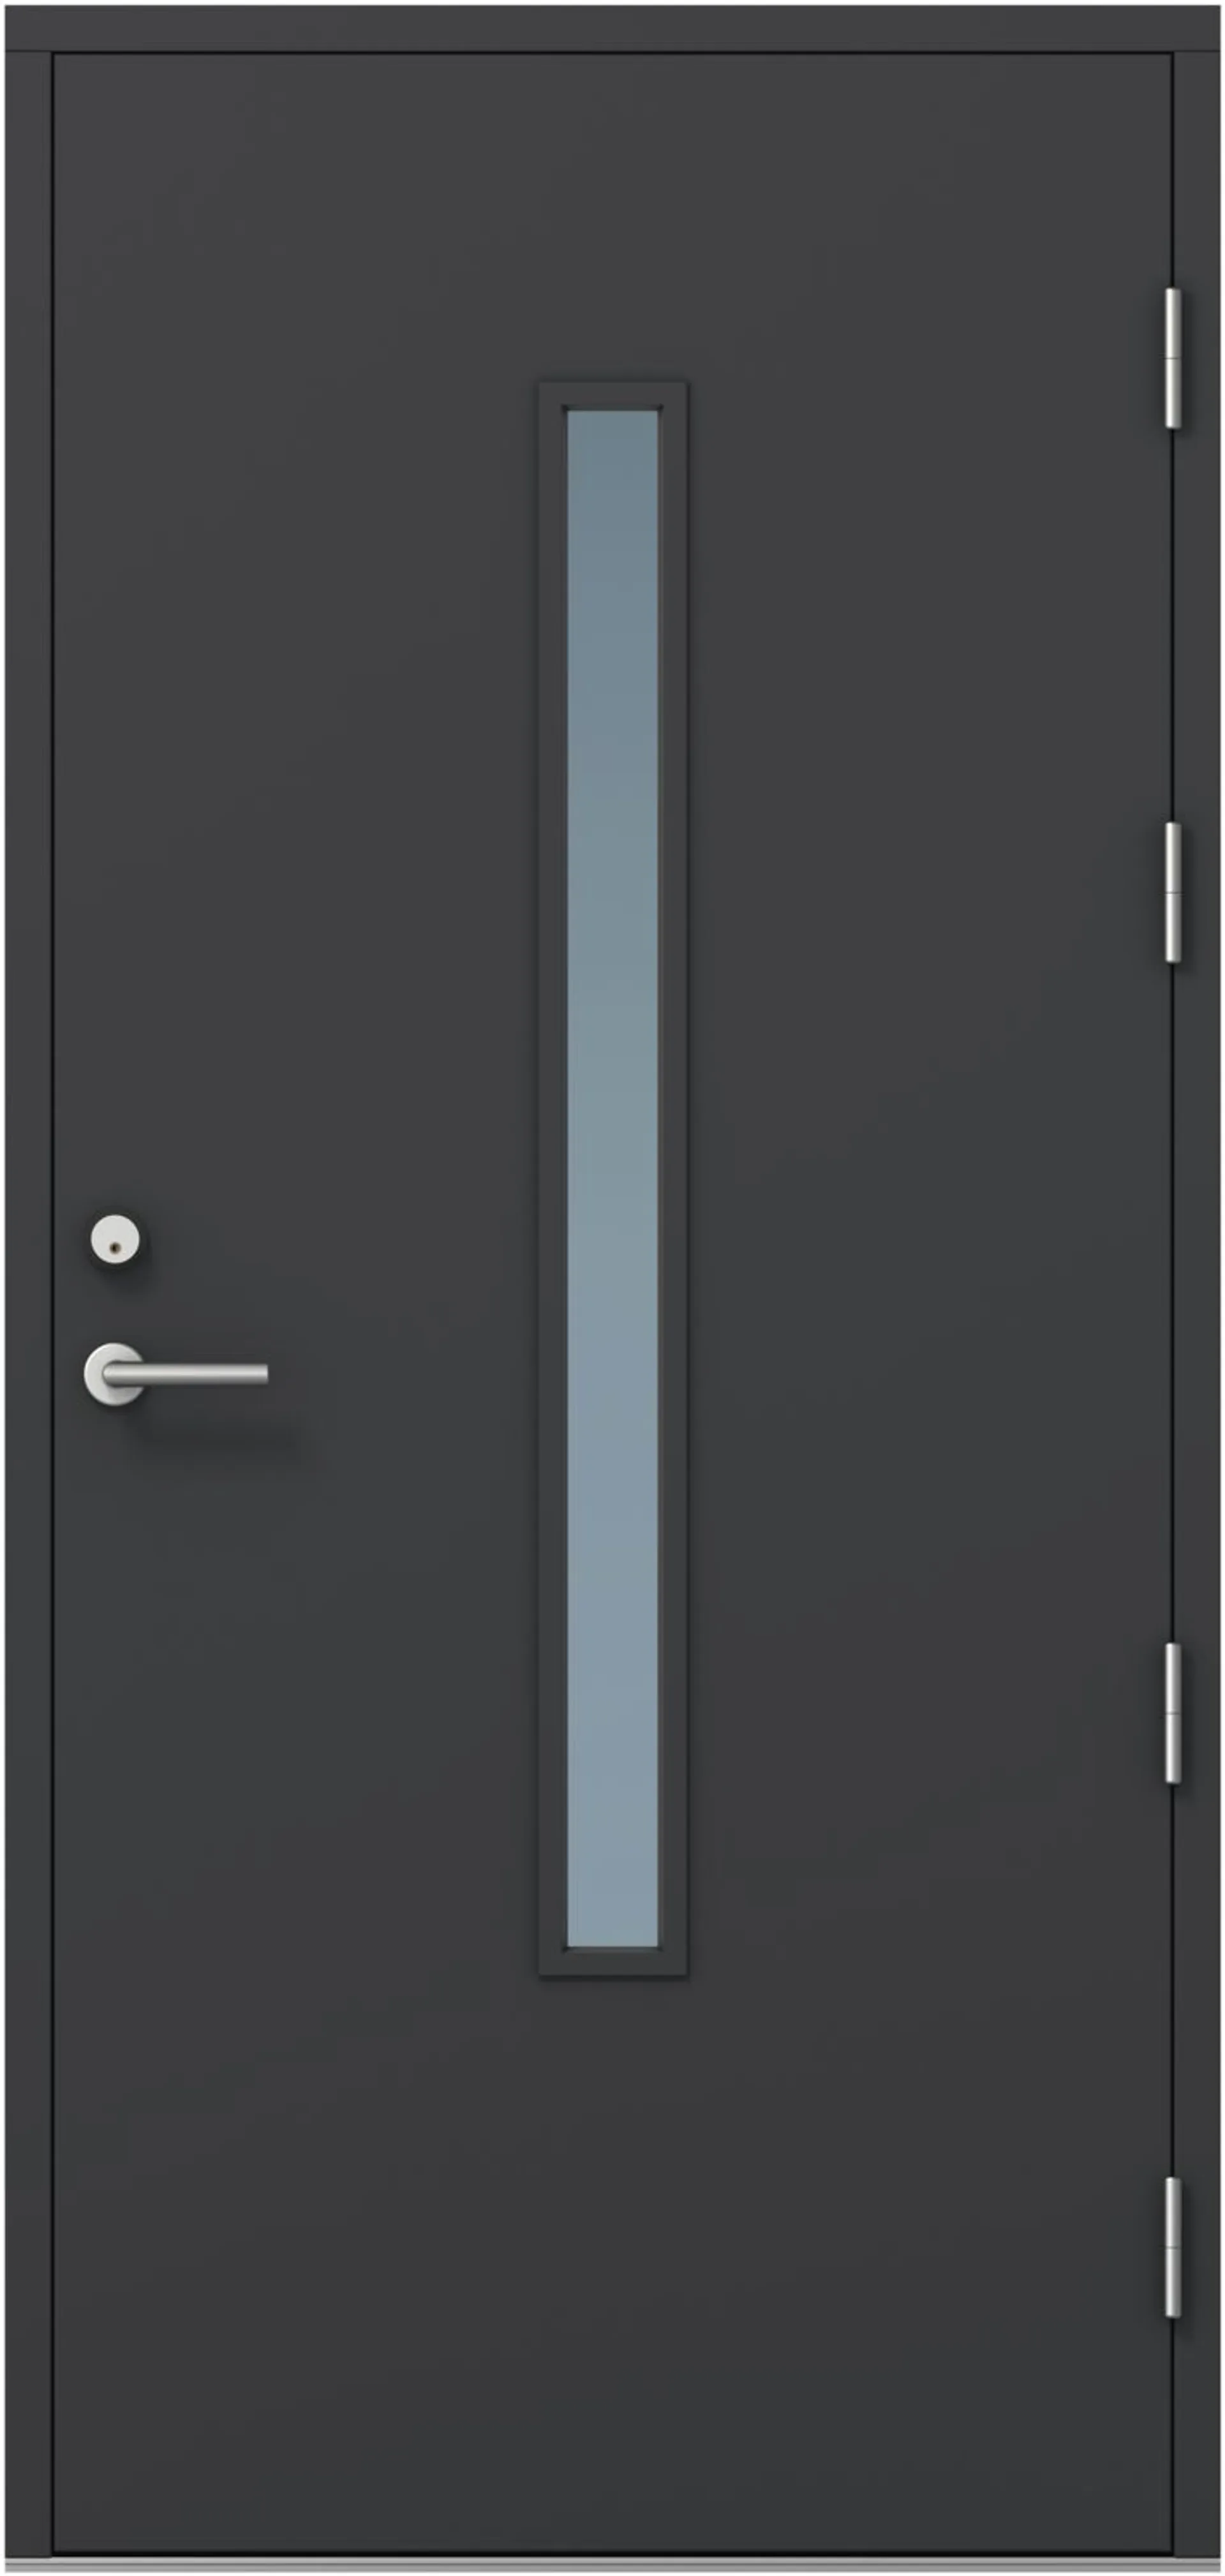 KASKI-ulko-ovi FE-810 pitkällä lasilla, tumman harmaa, 9x21 vasen, kynnys öljytty koivu, karmi 115mm